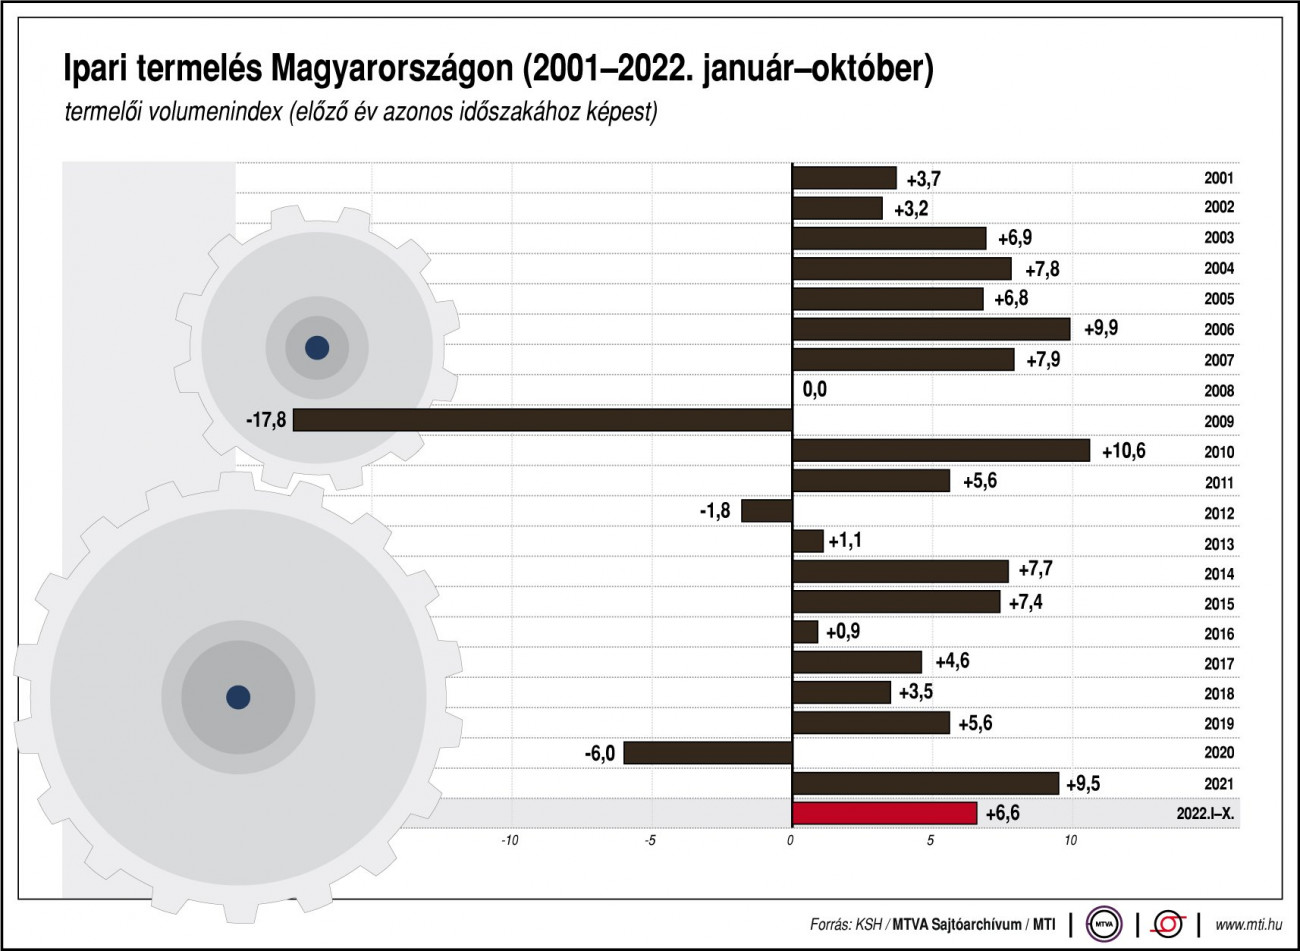 Ipari termelés Magyarországon, 2001-2022. január-október
Termelői volumenindex, előző év azonos időszaka egyenlő 100,